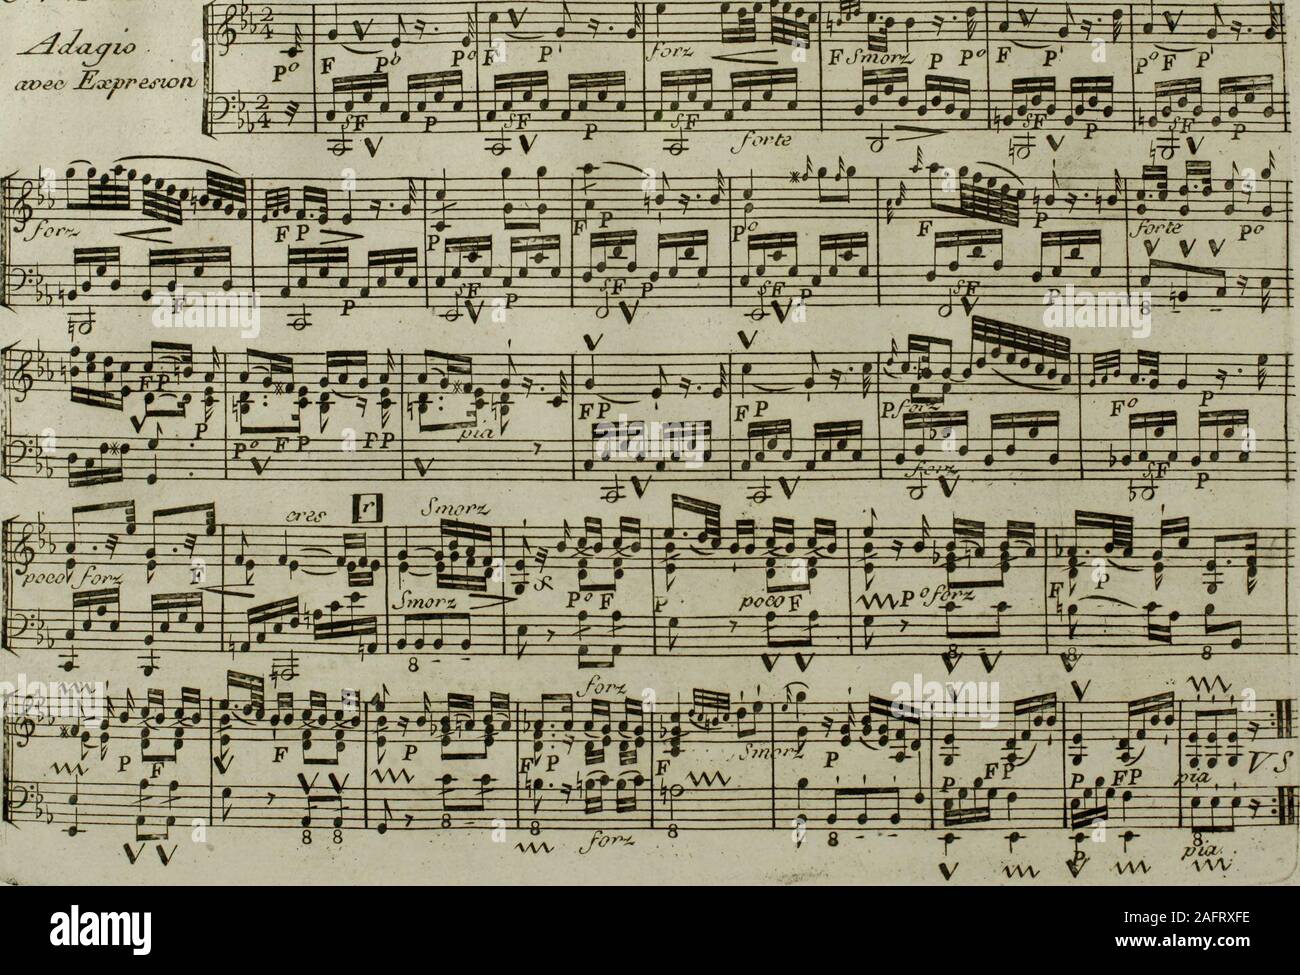 . Andante du celébré Haydn : arrangé pour la harpe avec accompagnement de violon ad libitum. do/ttj/n/doeJ, etun cordon deaqye rUr led vtbratunta ? ixxmrmuJ daru l-14caderrue a entrndtt ten dece moui pbid/euro mo/vcamr compooed parAfXmntpltoltiLT darw le deddem el dedevelopper leo arantayeo de ceo addidorid .JUadarne Aruinpttolft. led eaeeittoitecxiVed accompaon.t.a latotd avec le v/olon etaoee aon nouveau Piano-forte Centre baiTe yui ee tor/die avec lepned, on conn, Adyartd le 22.Novembrc rj8j ? LE Ml*DE CONDORCET 43oiti3 / ine V AI^TATT 77cyeth daces Suj7ies &Zc az&gt;e& JSxpresion. VW VW 4 Stock Photo